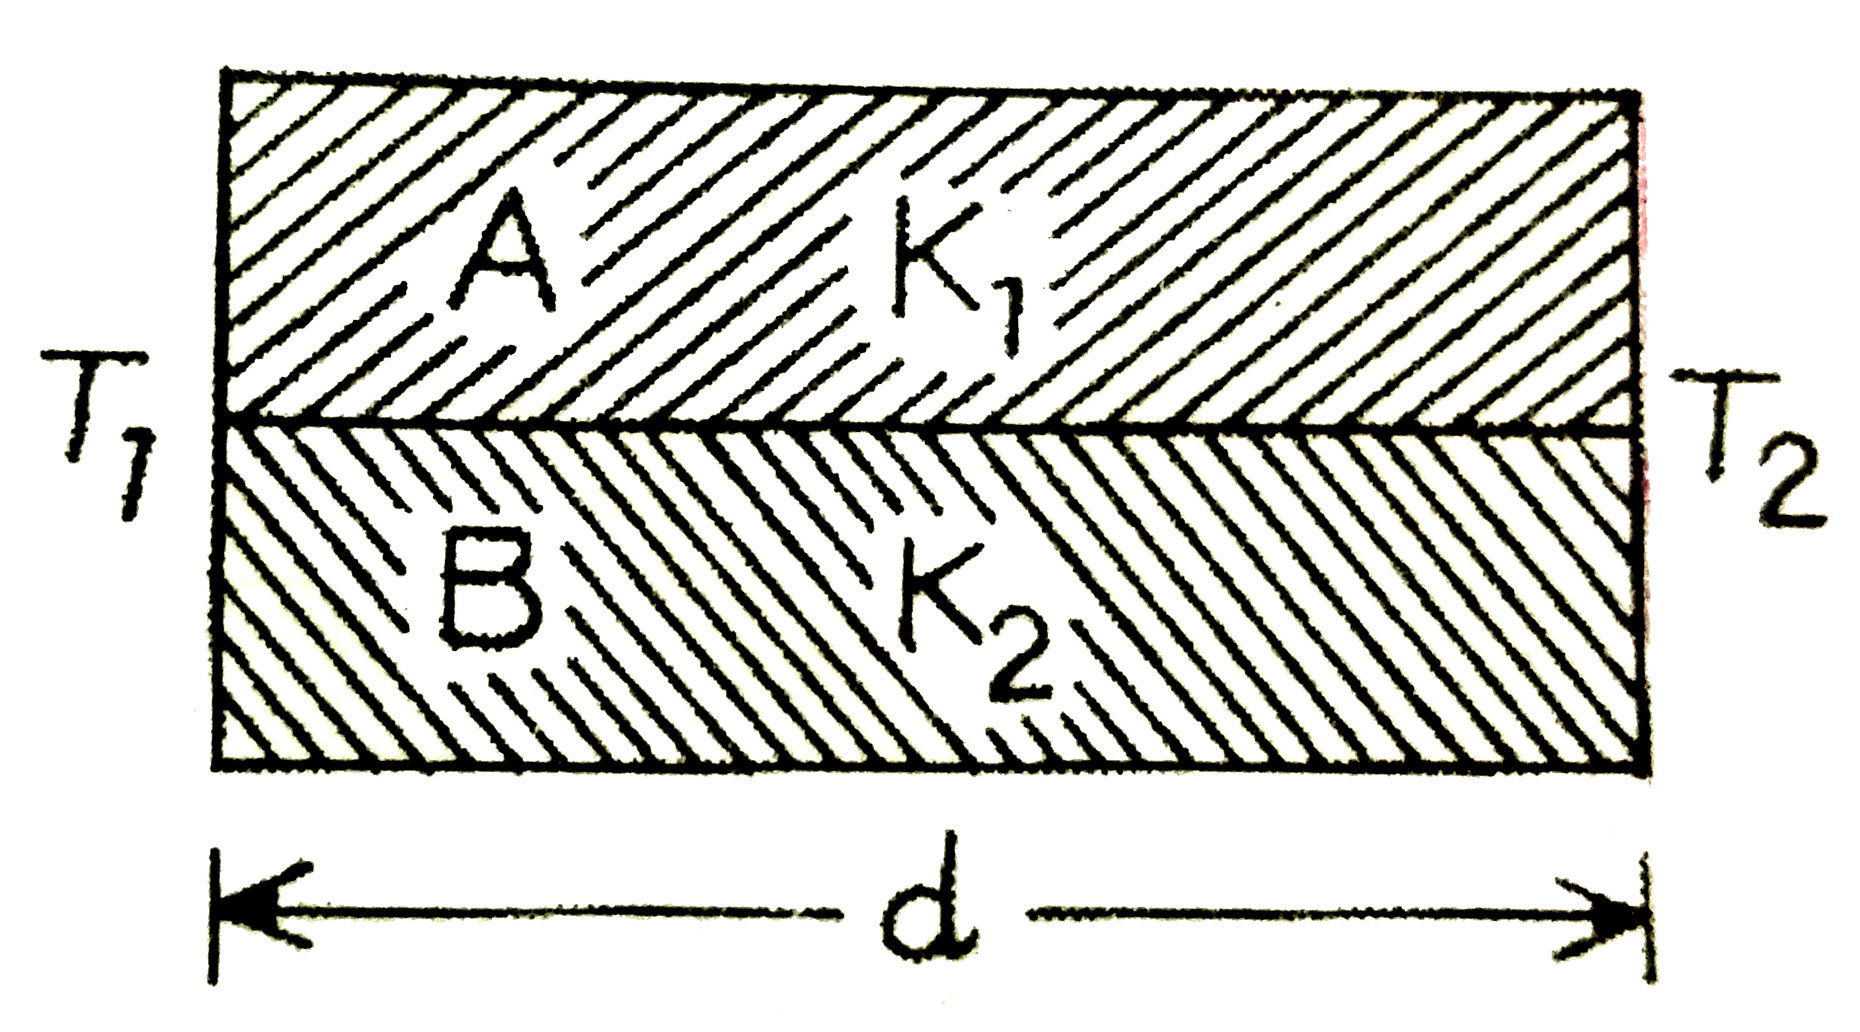 विभिन्न पदार्थो की बनी दो छड़ो A ओर B को,आरेख में दर्शाये गये अनुसार आपस में वैल्ड कर जोड़ दिया गया है।इन छड़ो की ऊष्मा चालकता क्रमशः K1 तथा K2है।तो,इनसे बनी संयुक्त छड़ की ऊष्मा चालकता होगी: